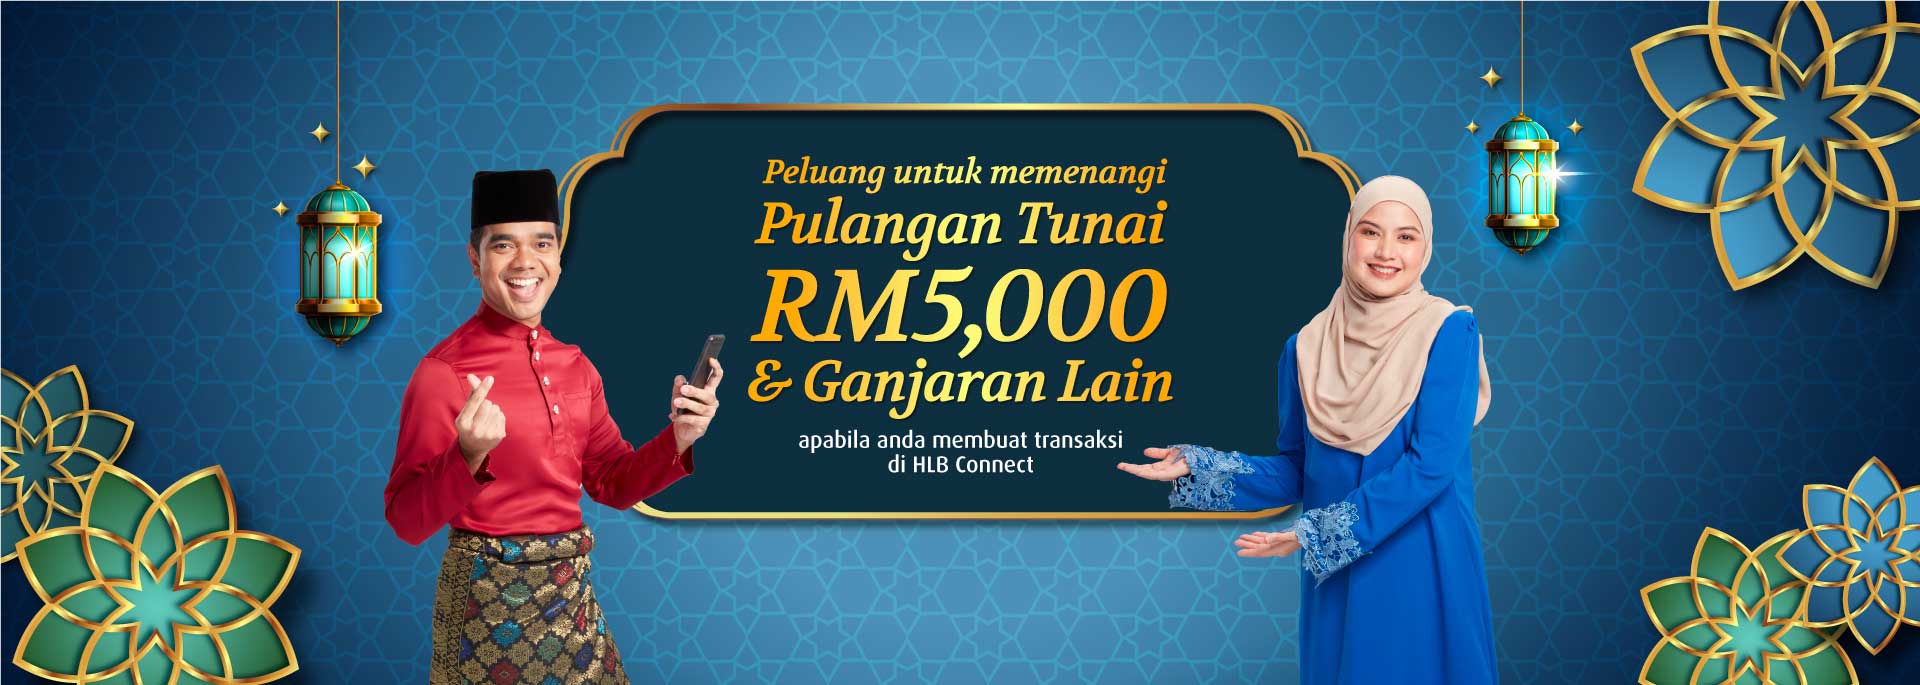 Peluang untuk memenangi Pulangan Tunai RM5,000 & Ganjaran Lain